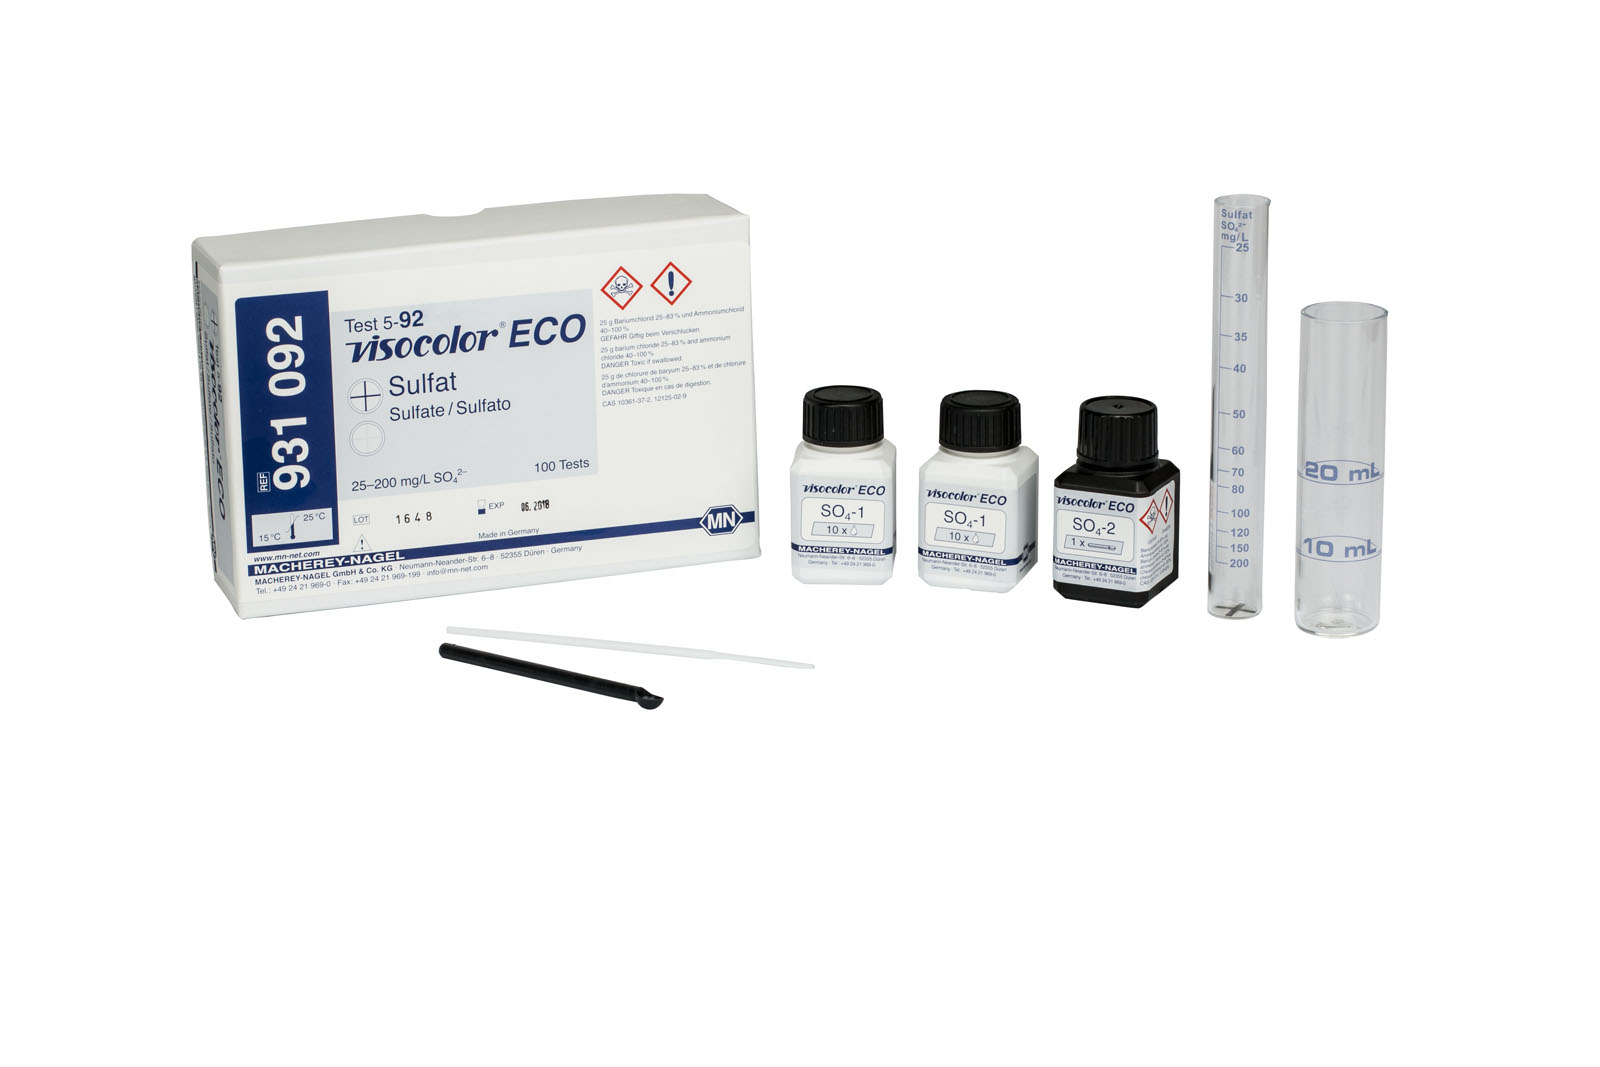 VISOCOLOR® ECO Sulphate Test Kit